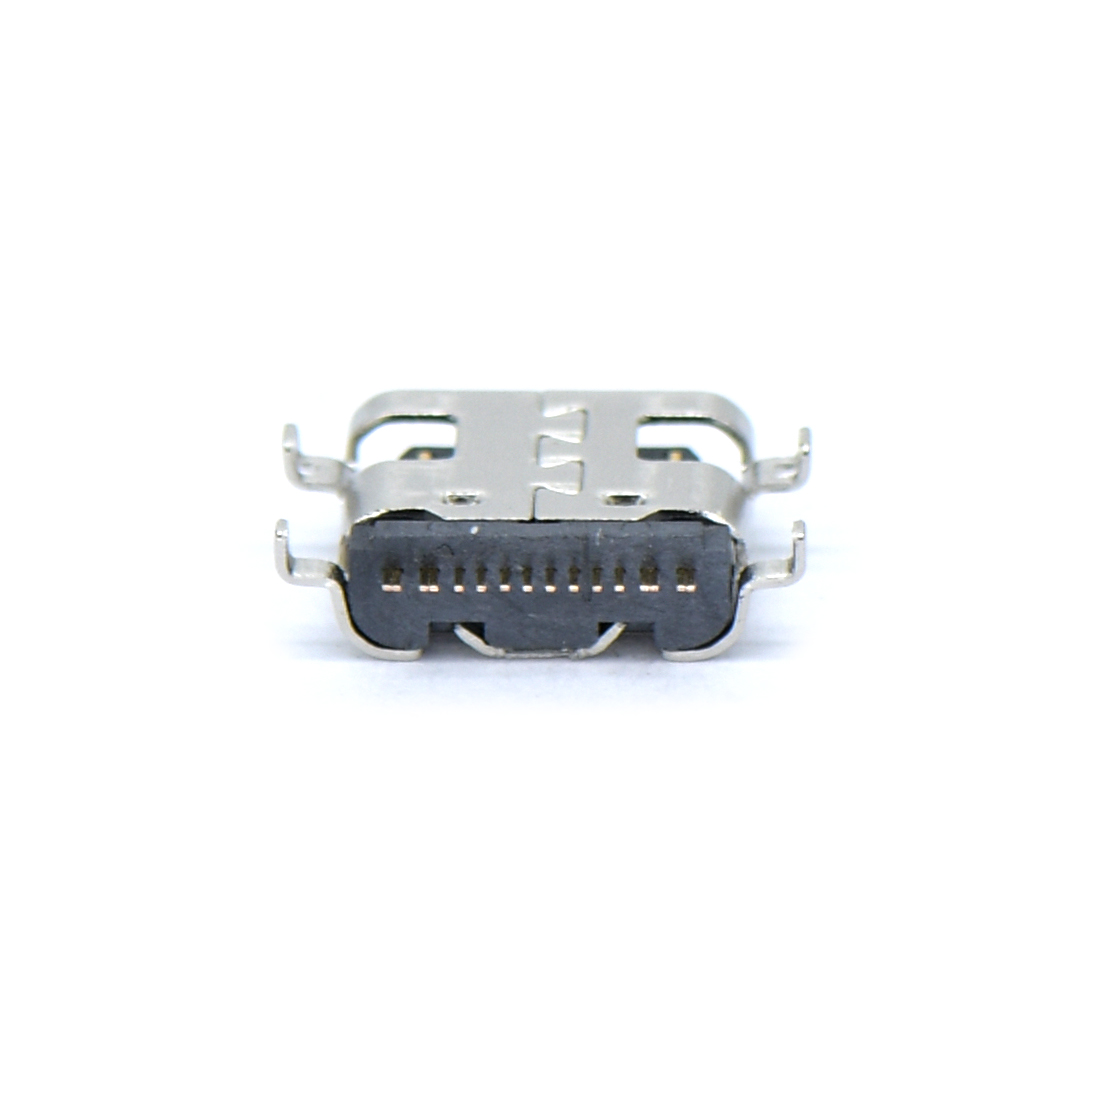 USB连接器Type-C 16P/F SMT 沉板式1.86mm 外壳四脚插板 L=6.5mm 无弹